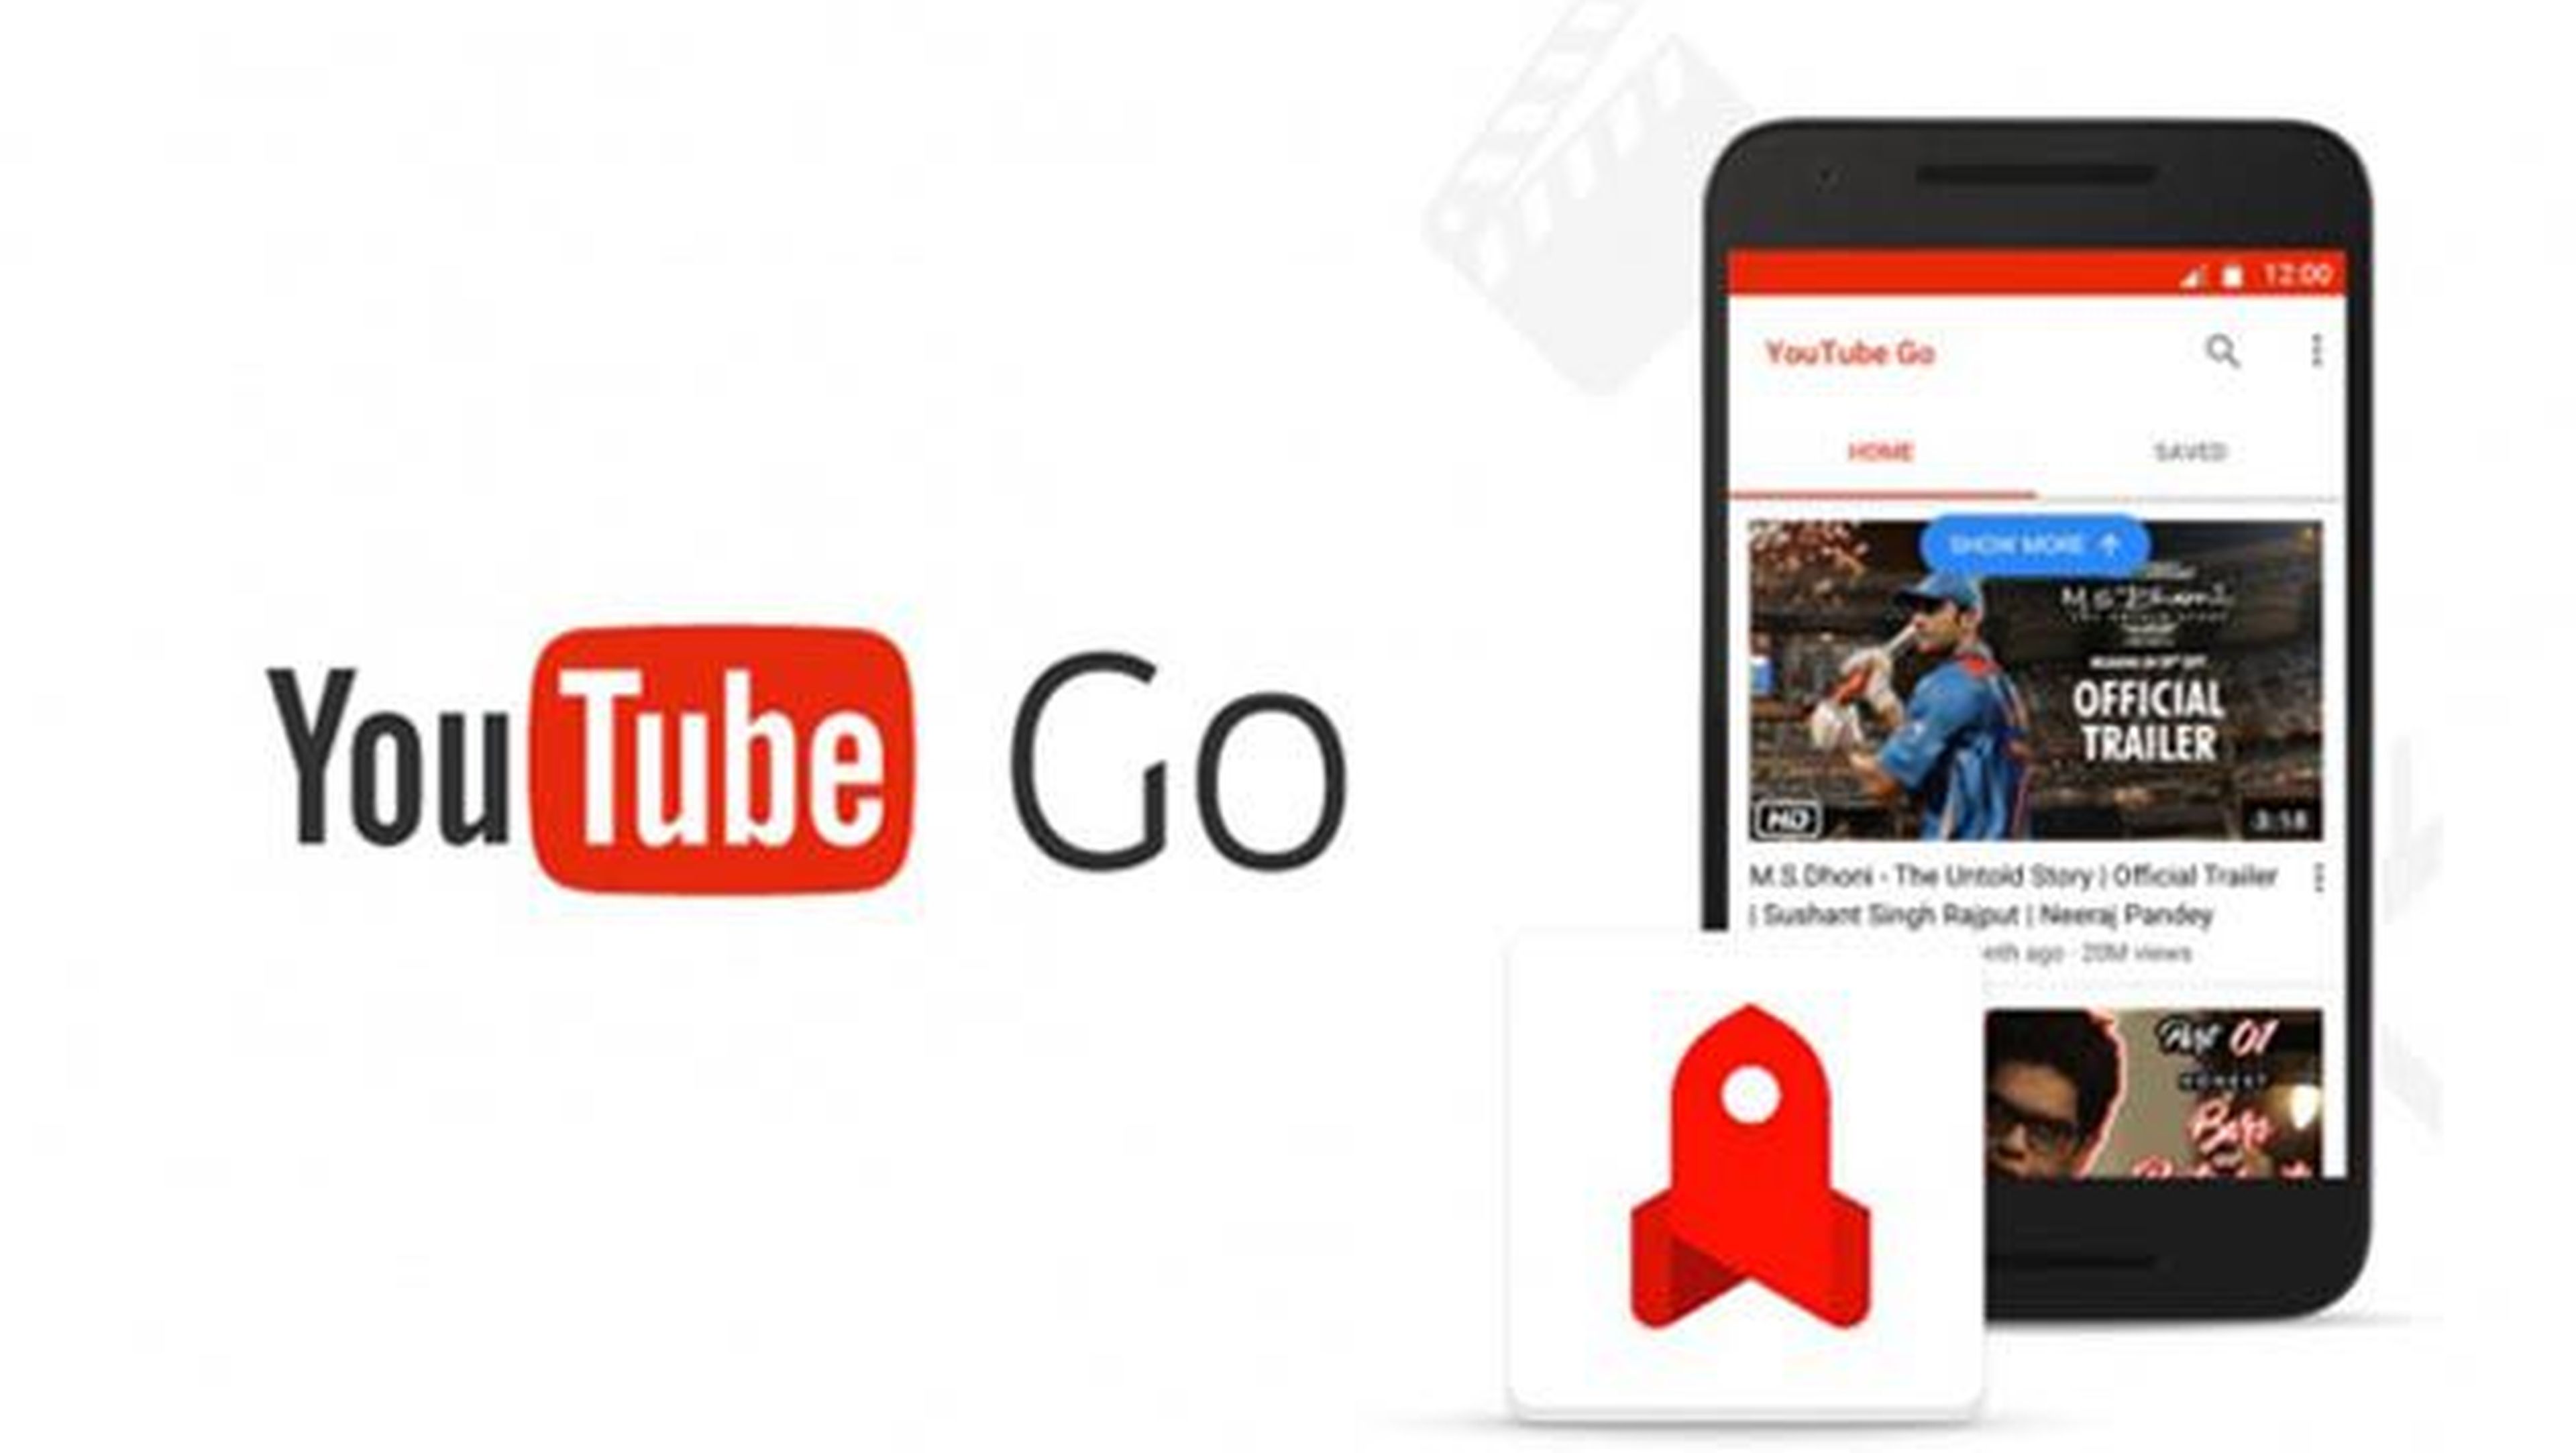 YouTube GO, ya disponible en algunos países.